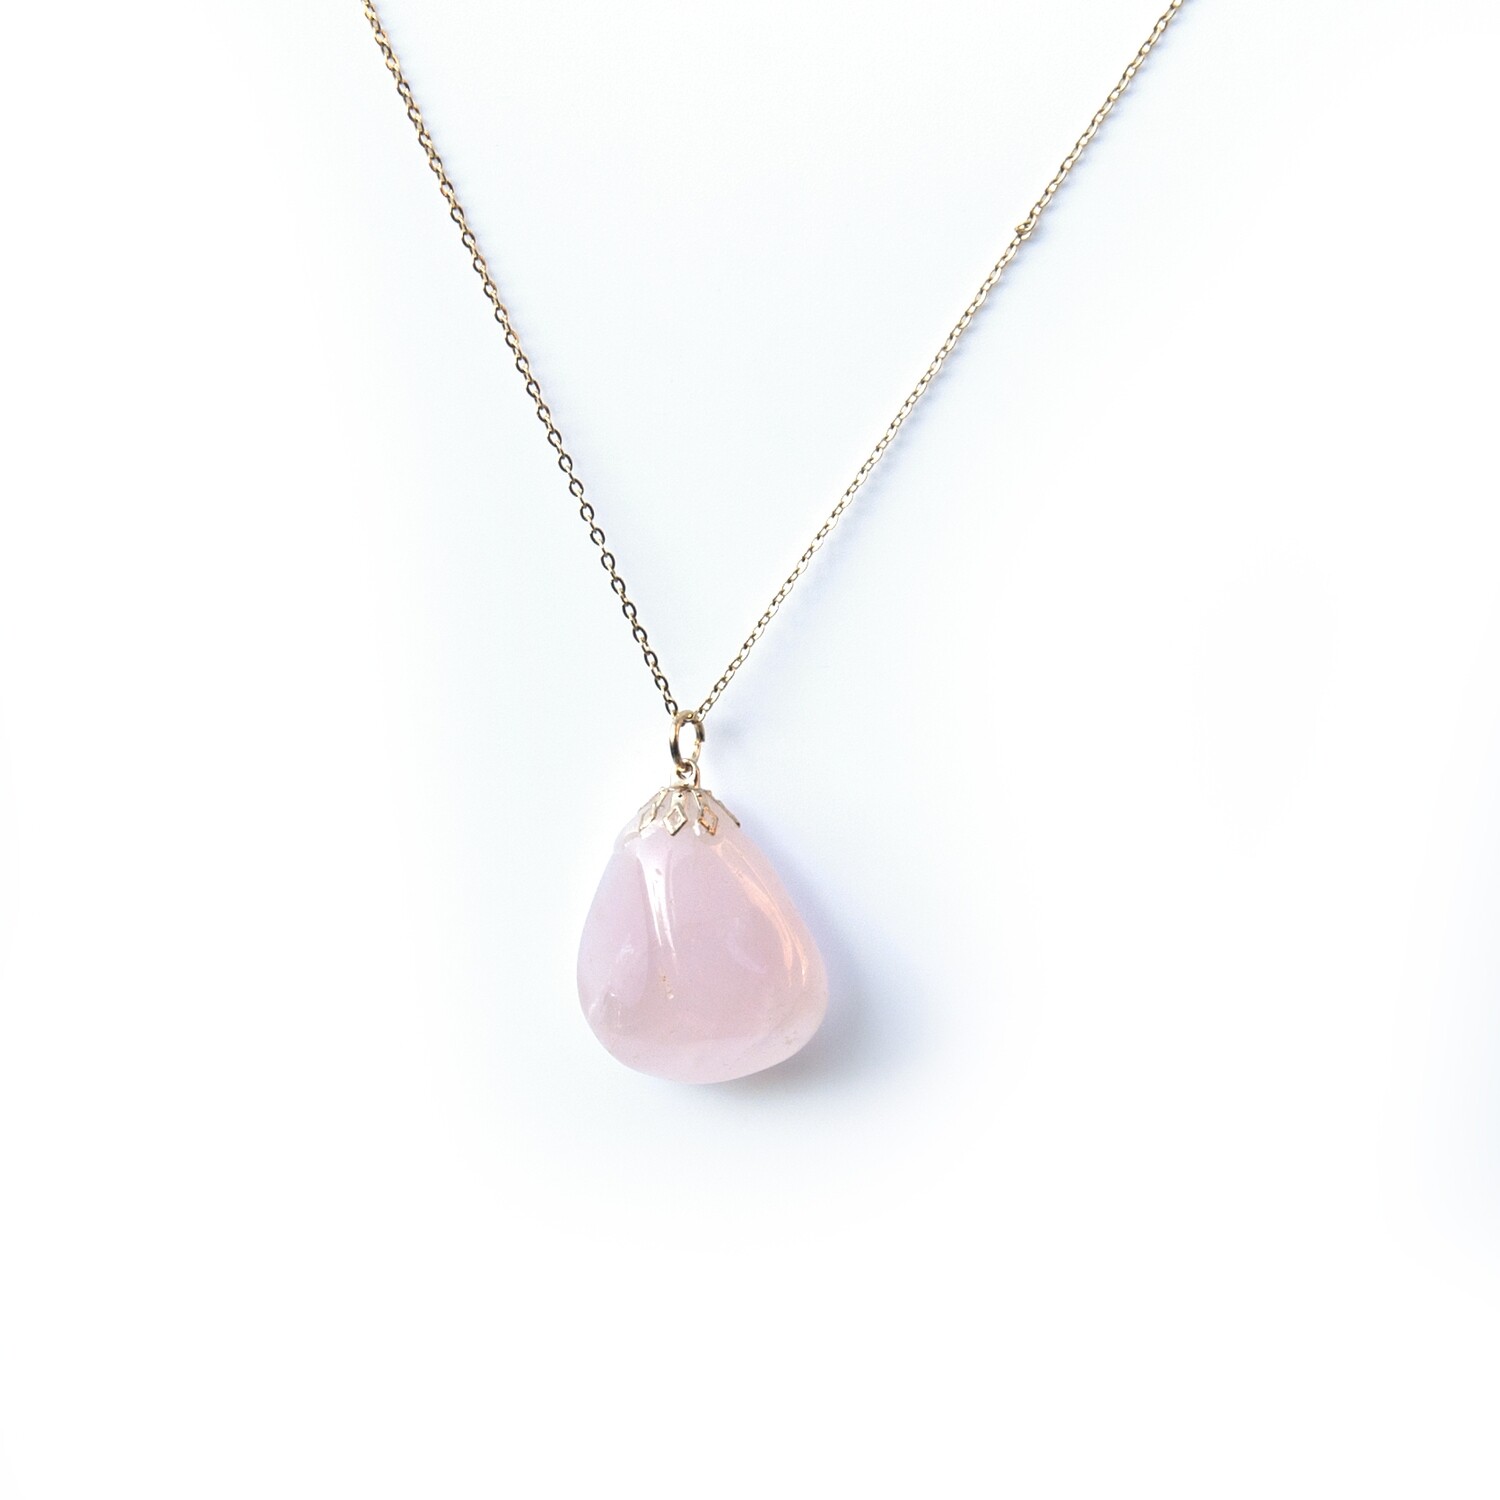 Rose Quartz pendant gemstone necklace